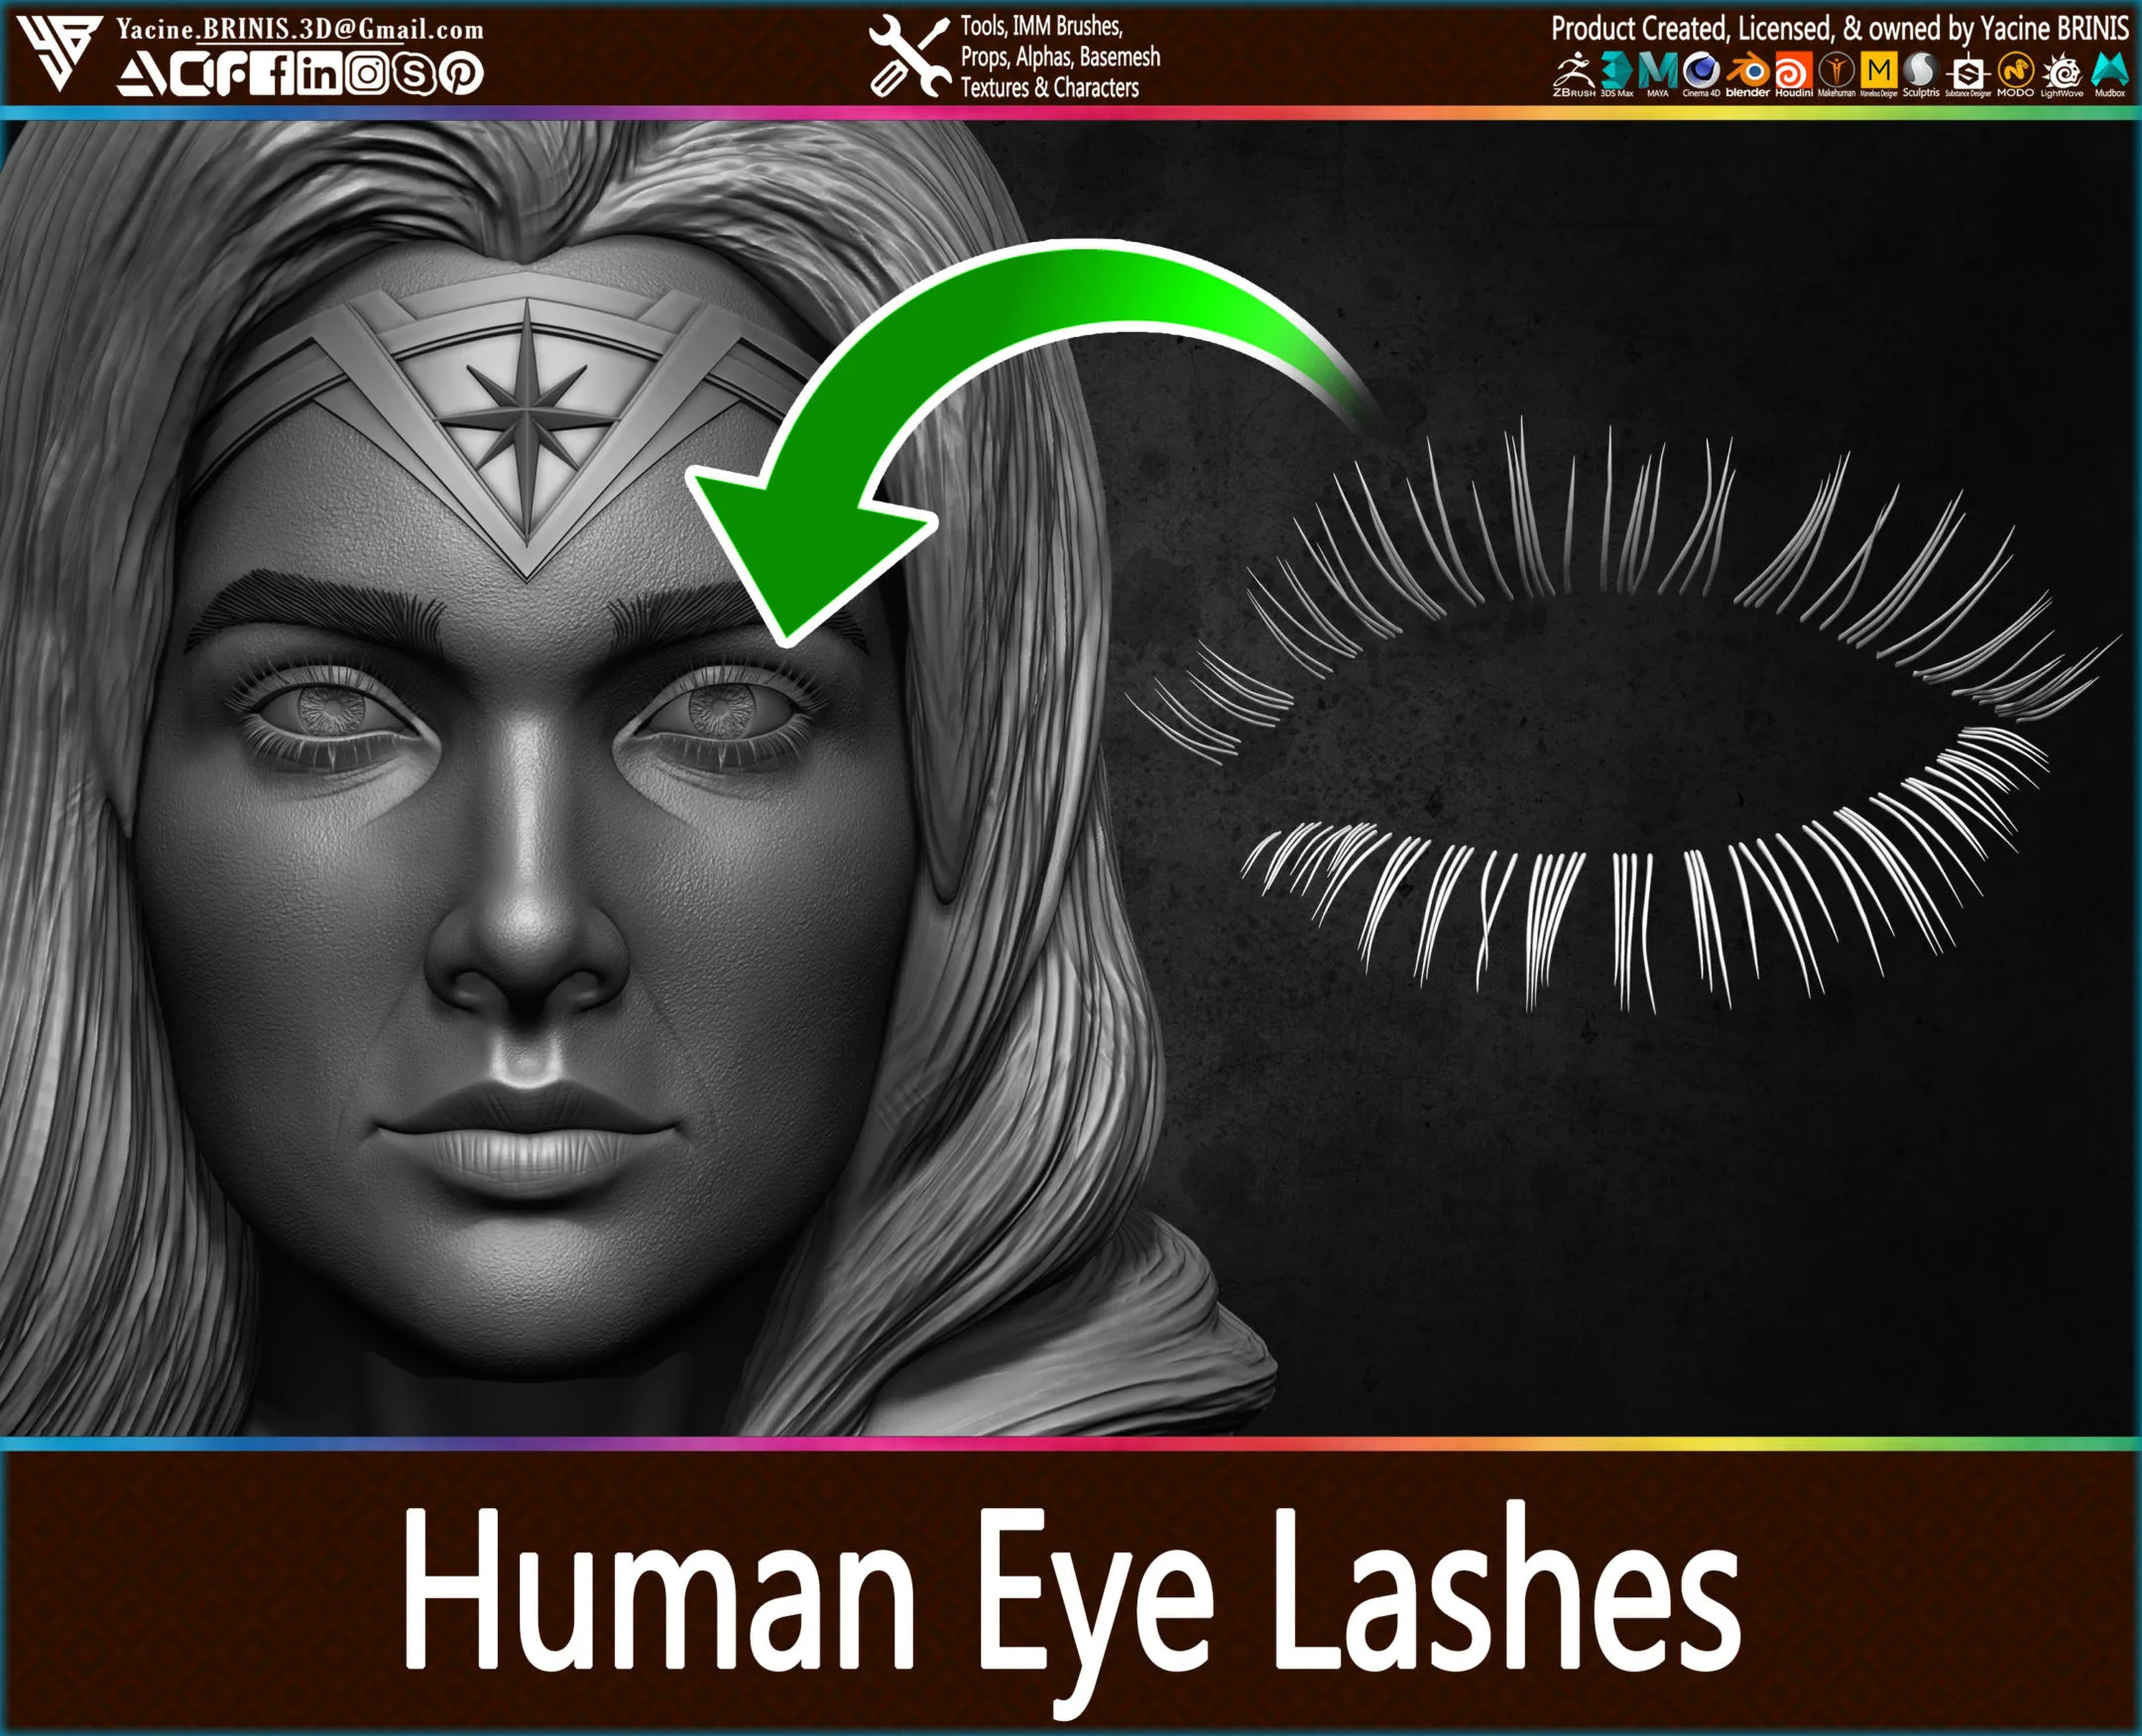 Human Eye Lashes (IMM, Obj, STL, ZTL) Vol 01